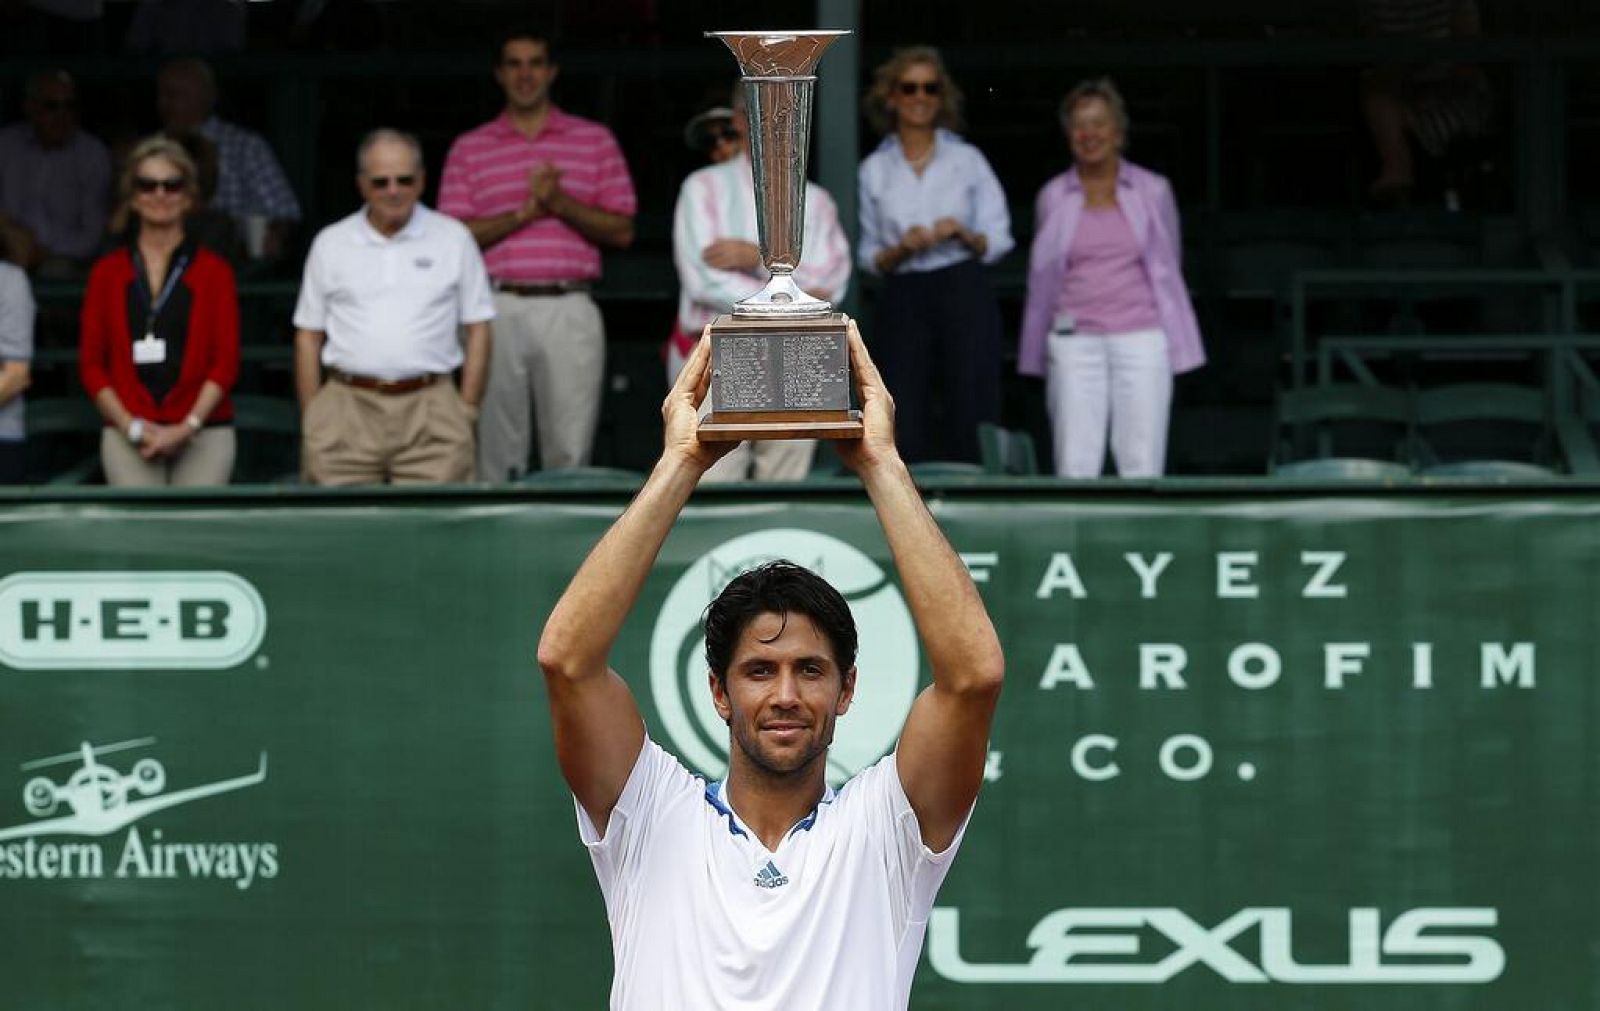 El tenista Fernando Verdasco levantando el trofeo del Torneo de Houston en EE.UU.